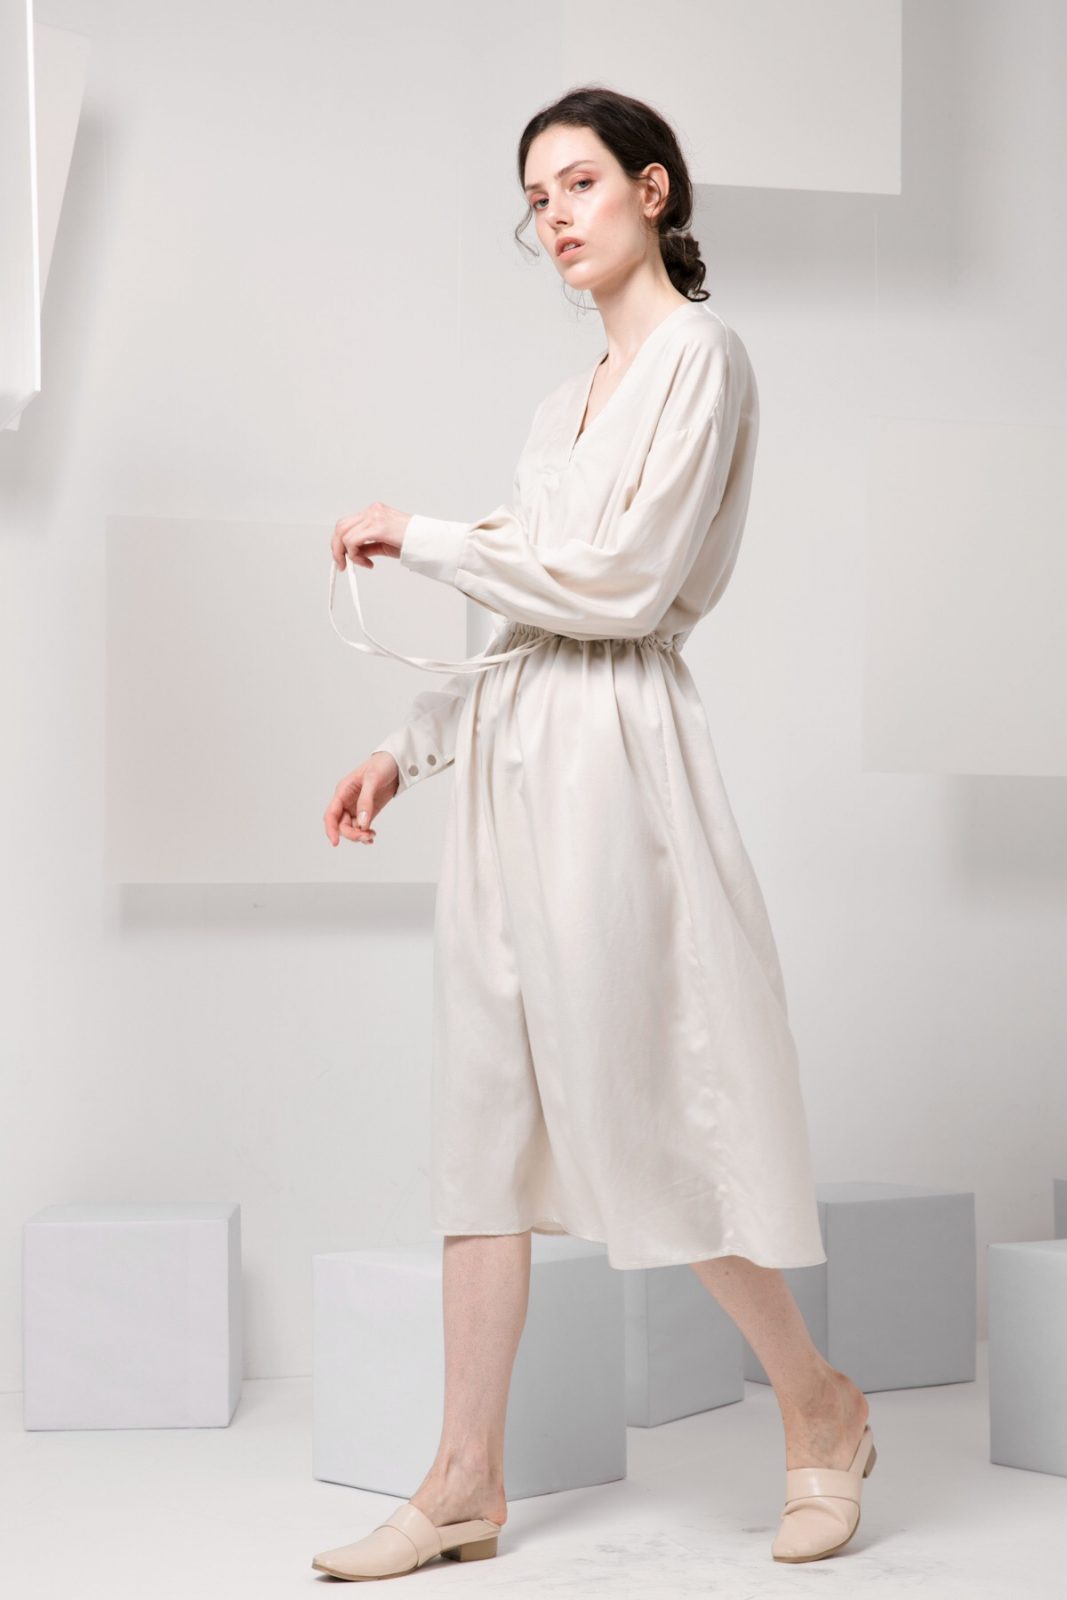 SKYE minimalist women fashion Einer v neck tencel linen drawstring tie waist dress 3